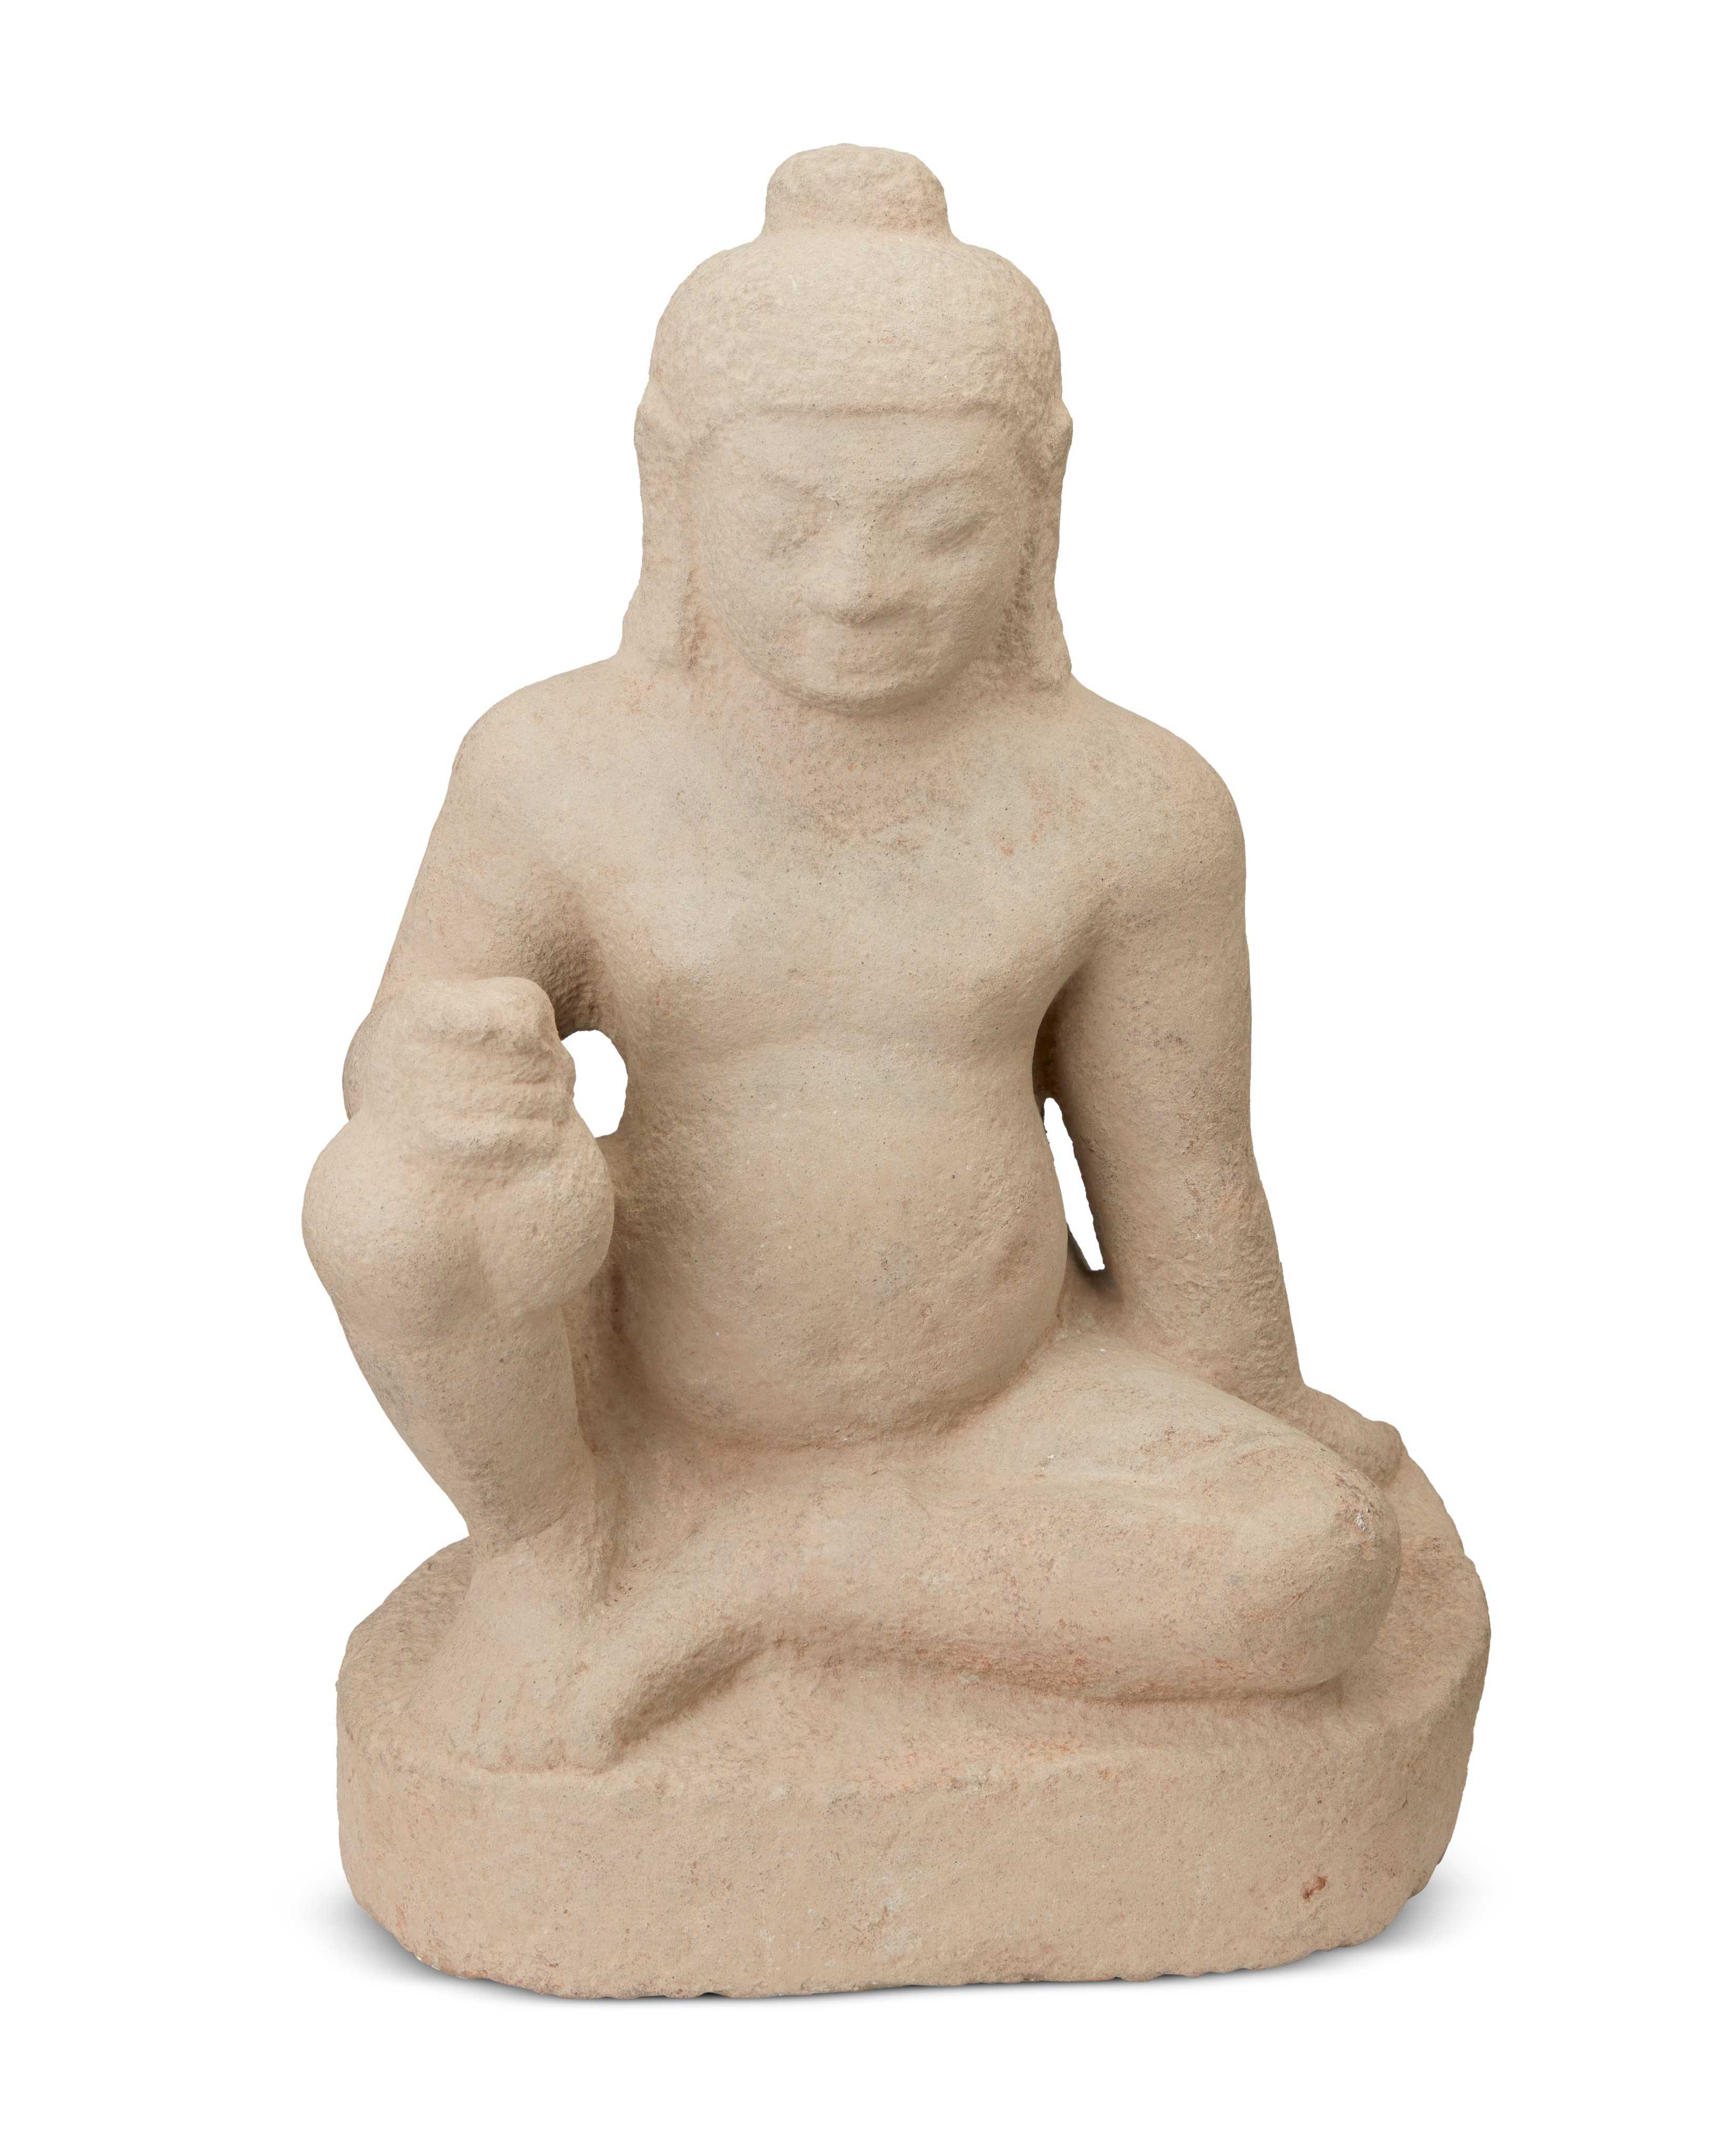 Buff sandstone figure of Kubera, estimated at $20,000-$30,000 at Moran.